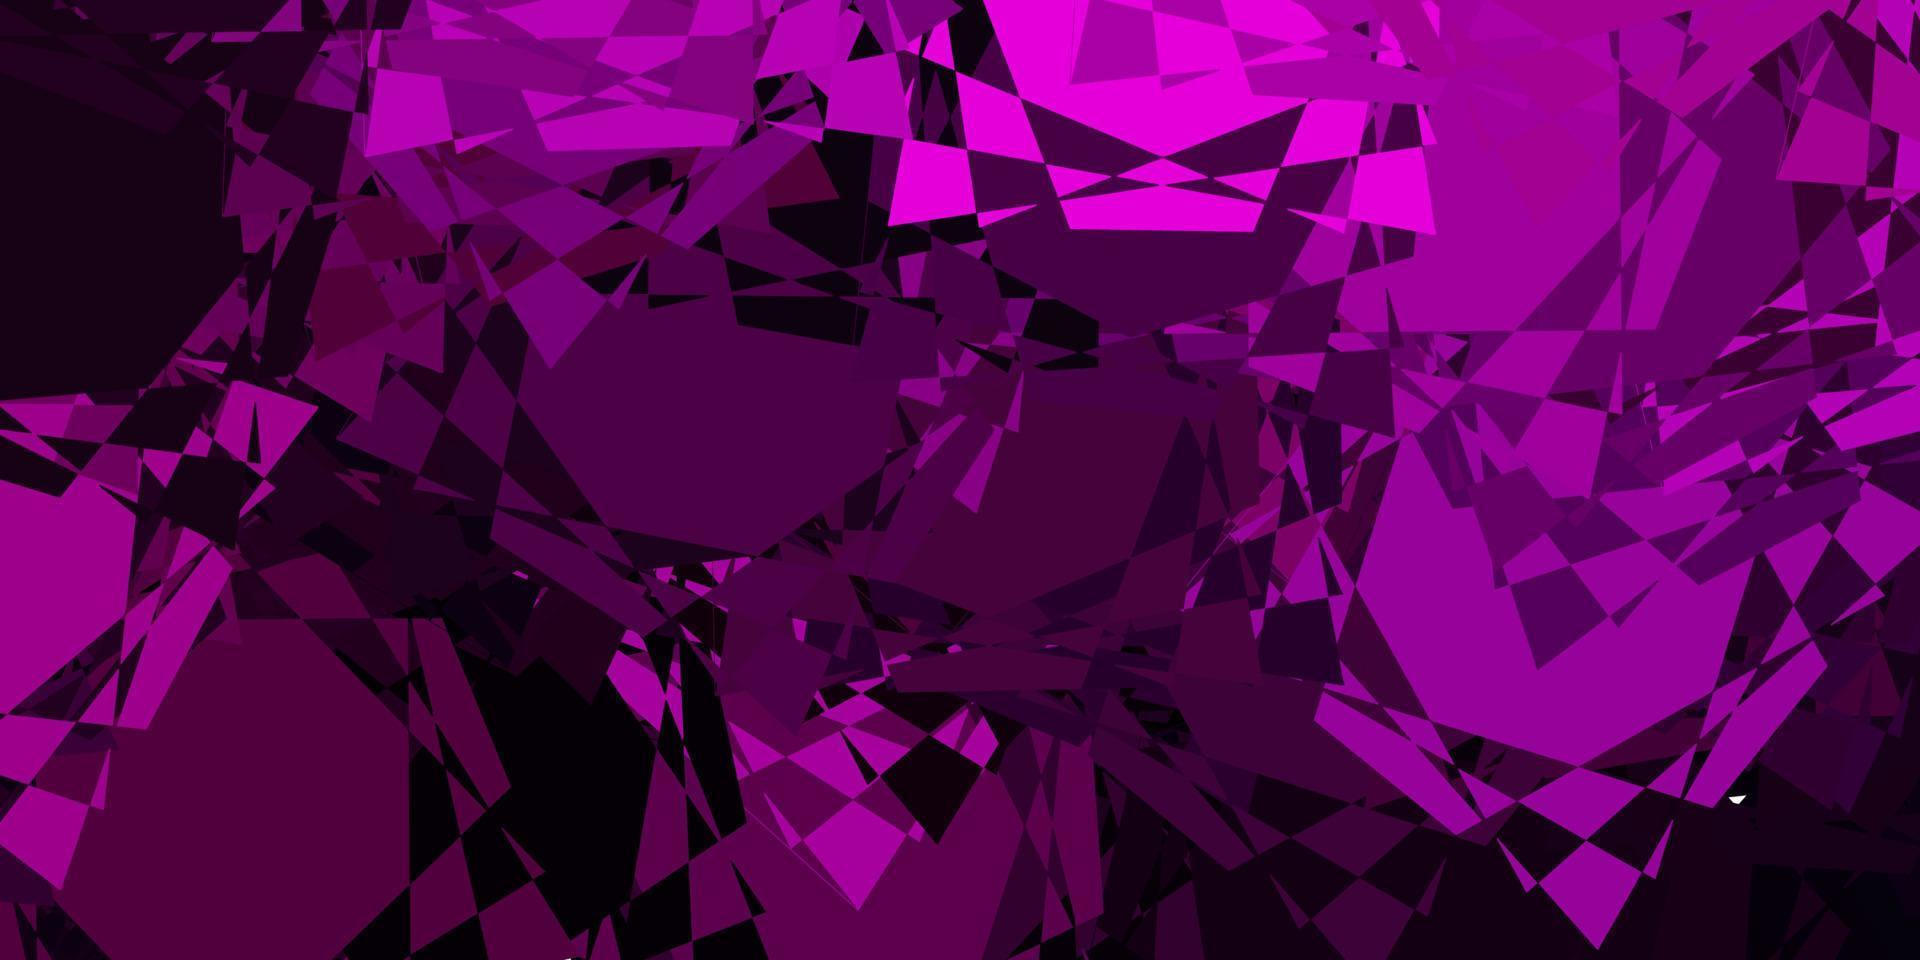 modelo de vetor rosa escuro com formas de triângulo.